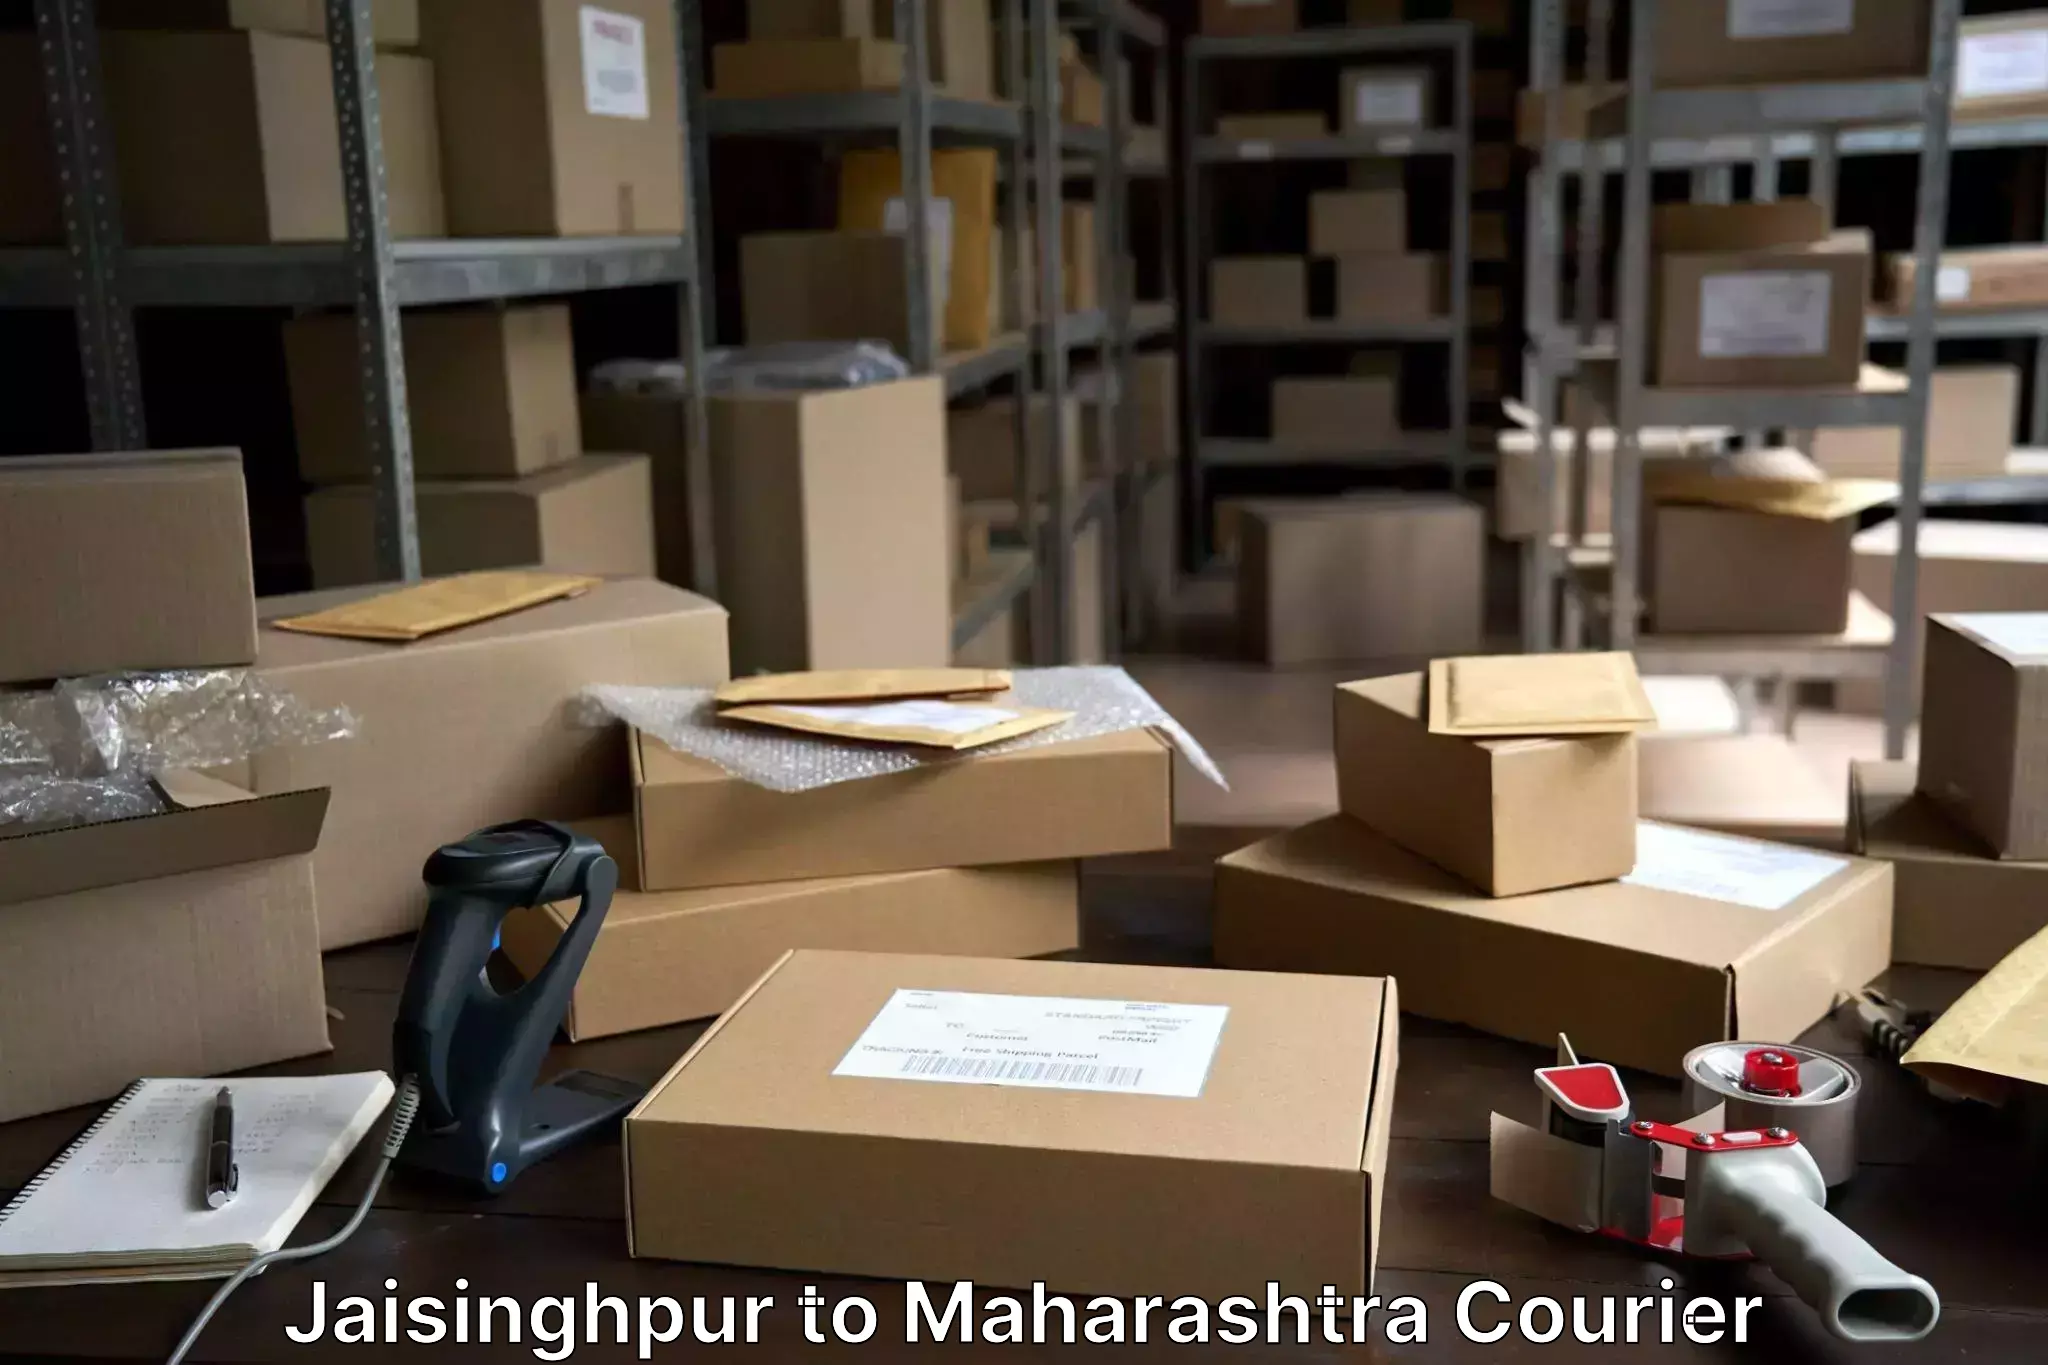 Luggage delivery system Jaisinghpur to Khandala Pune